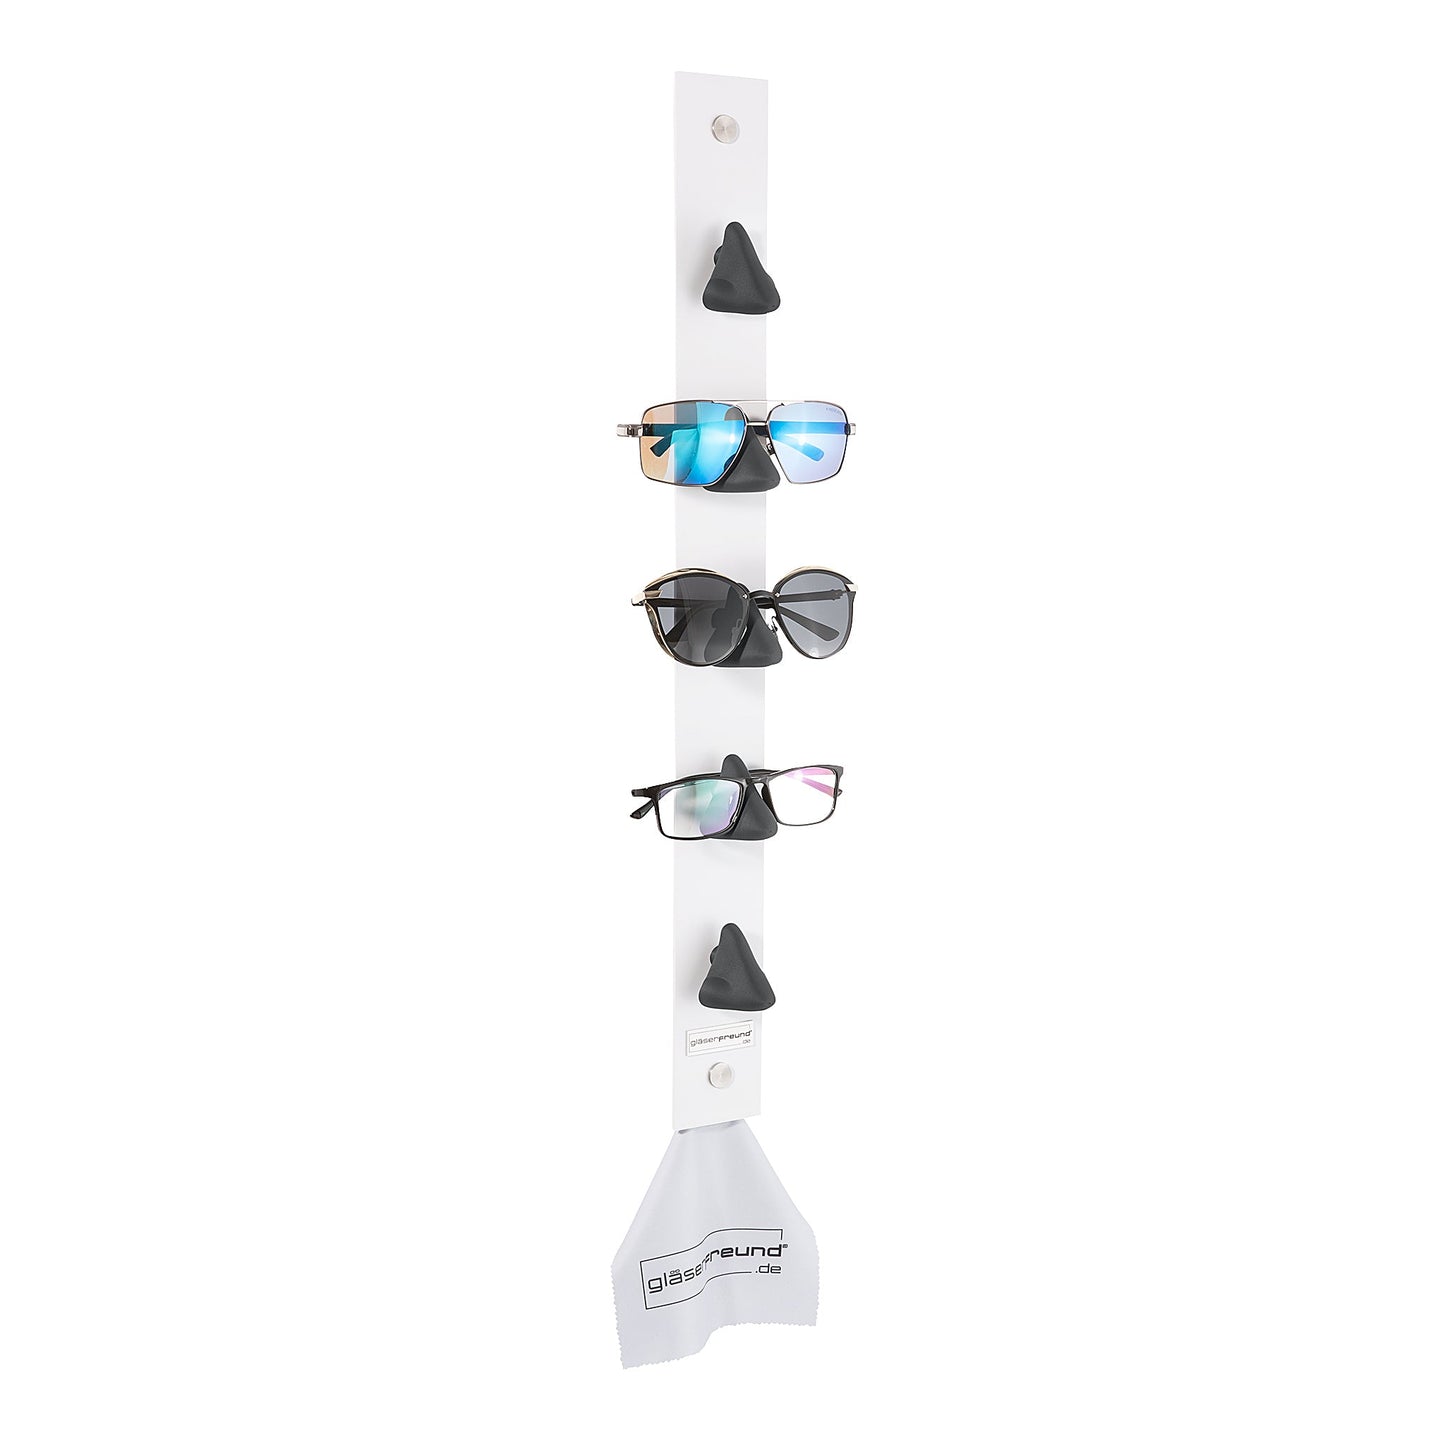 Calvin white - Brillenorganizer, Brillenhalter, Brillenhalterung, Brillenregal, Brillenständer, Brillenaufbewahrung, Brillengarderobe, Brillenablage und Brillengarage